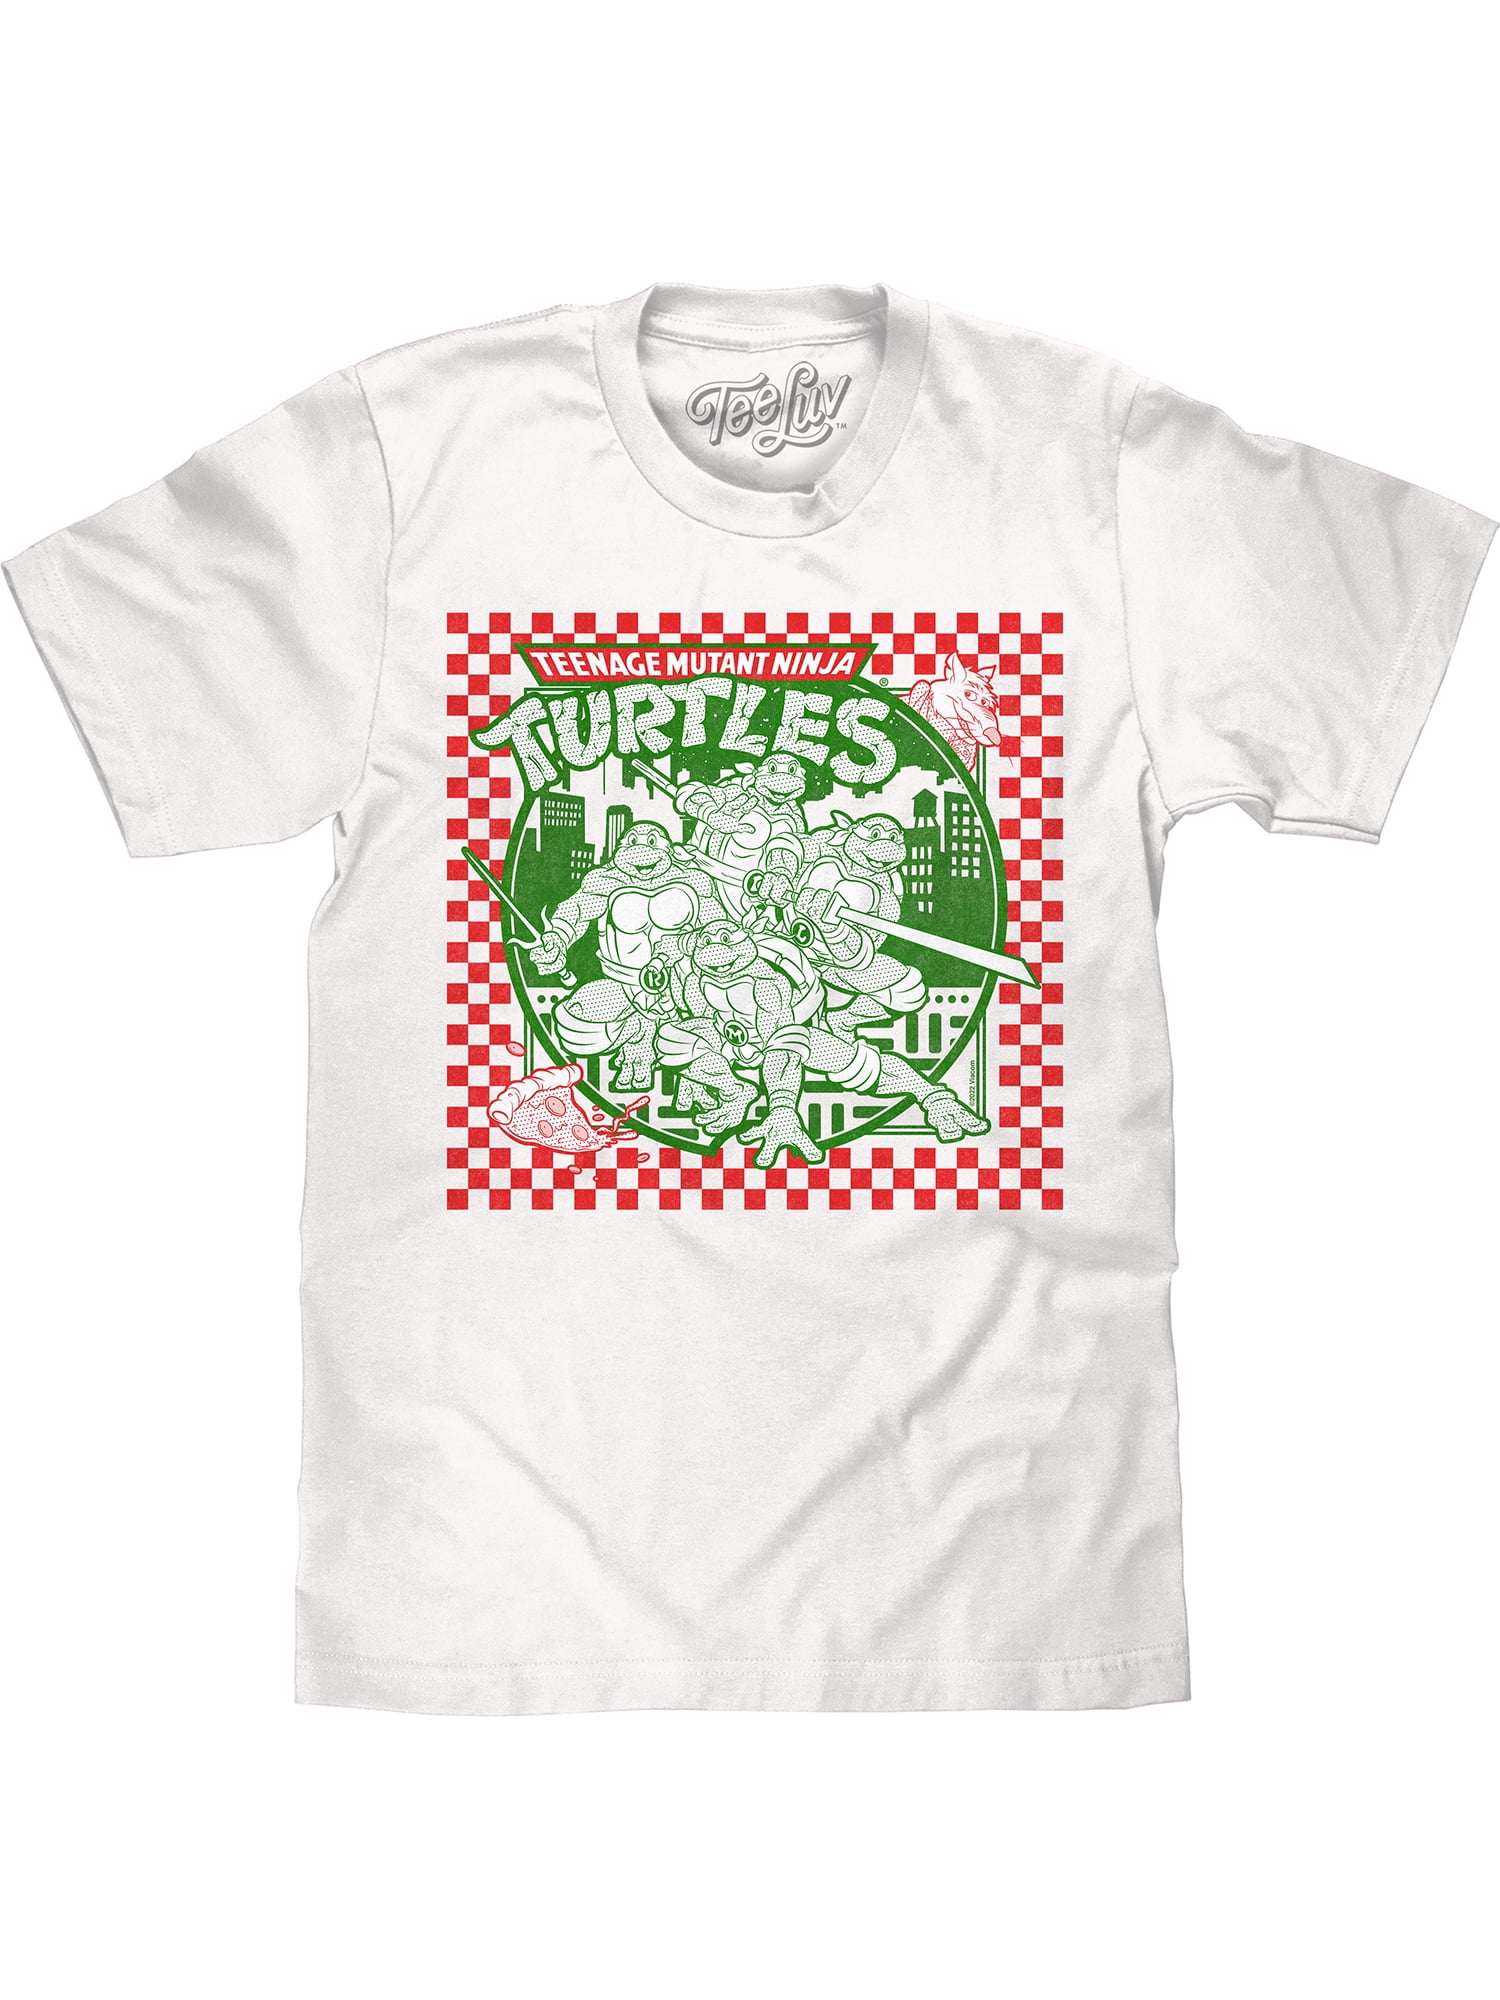 Teenage Mutant Ninja Turtles TMNT Boys Pizza Time T-Shirt New Blue Licensed 